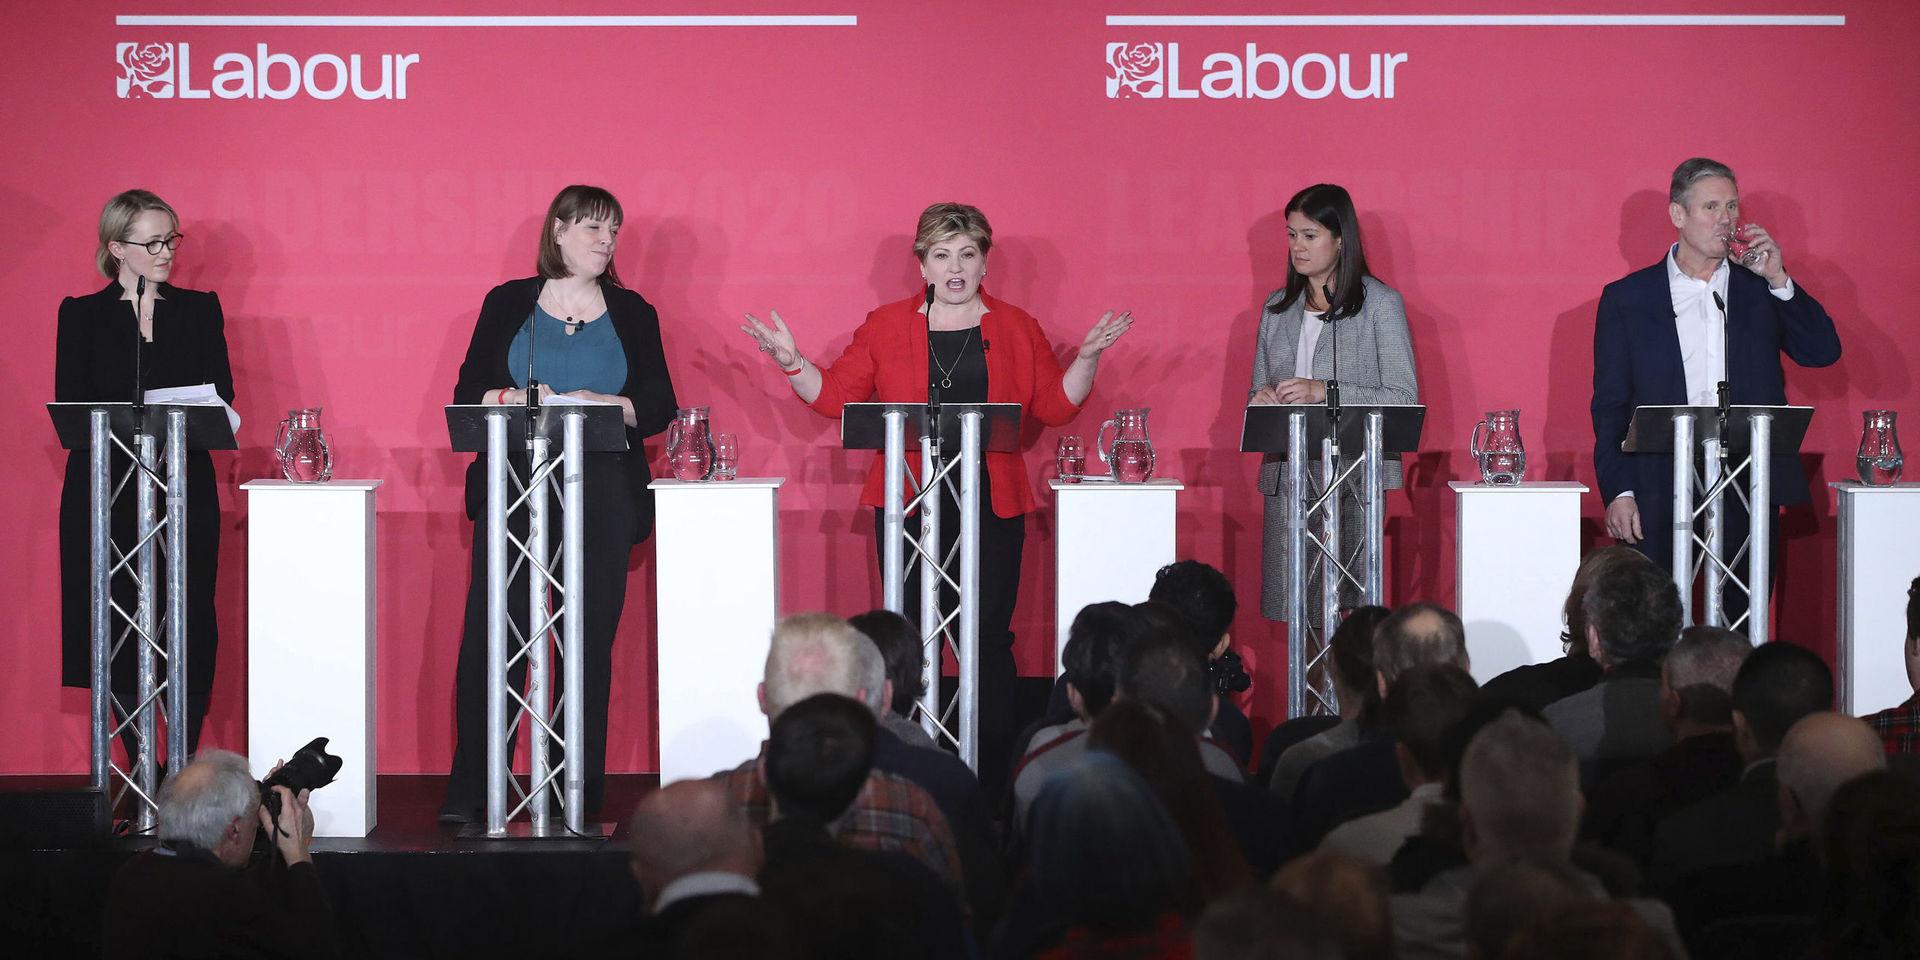 Labours ledarkandidater vid framträdandet i Liverpool, från vänster till höger: Rebecca Long-Bailey, Jess Phillips, Emily Thornberry, Lisa Nandy och Keir Starmer.